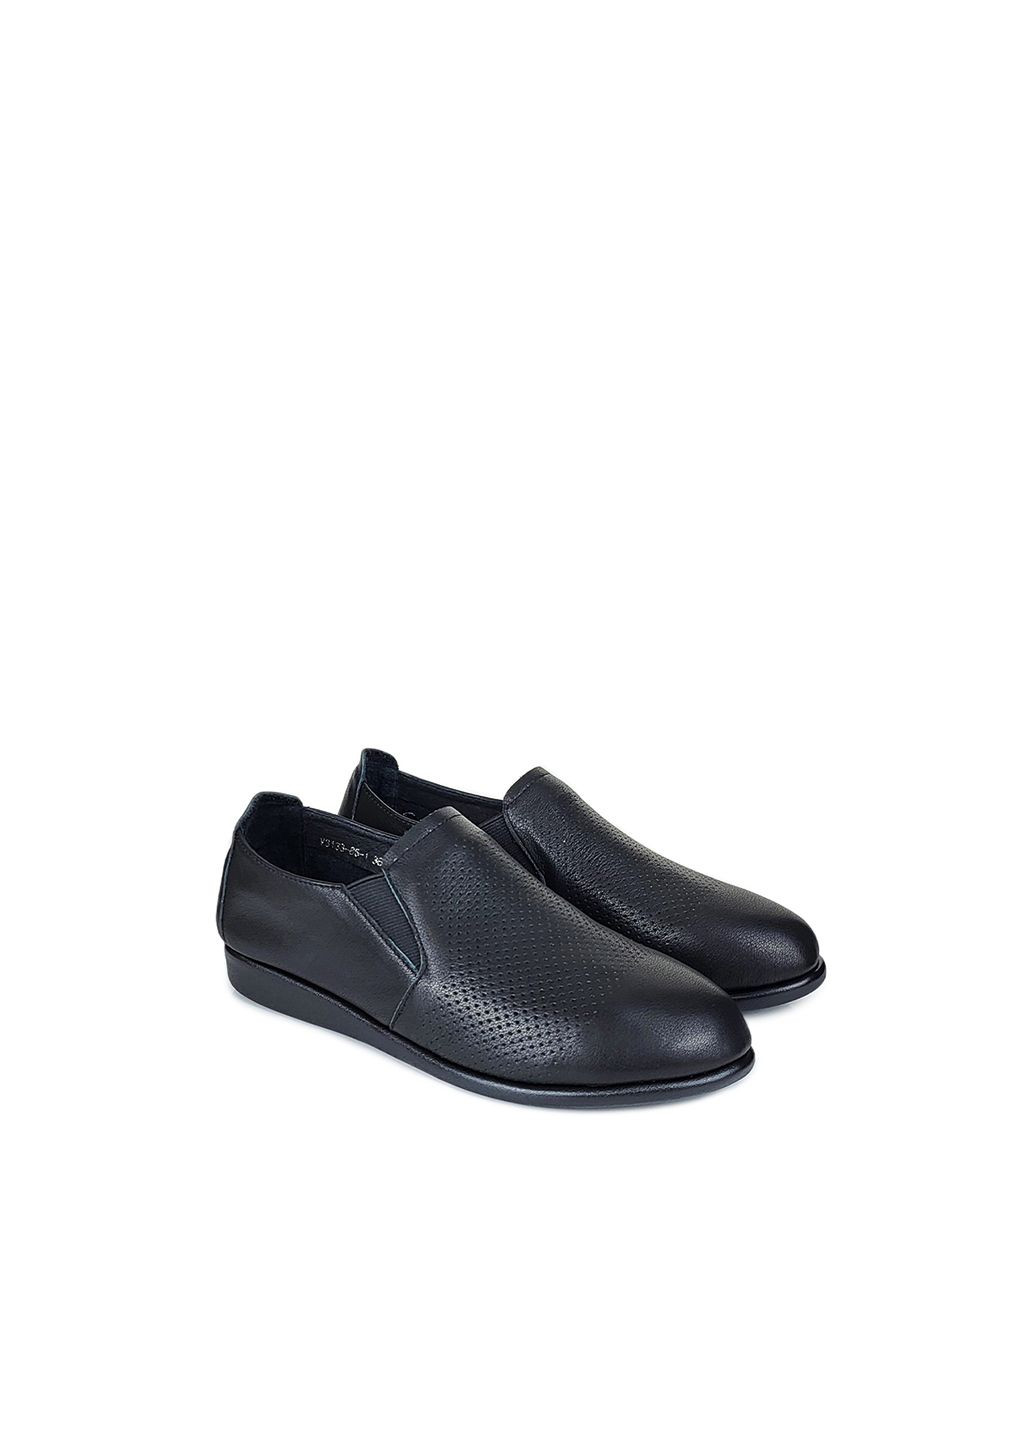 Кожаные удобные женские туфли без каблука черные,,V3133-5-1 чёр,36 Berkonty без каблука